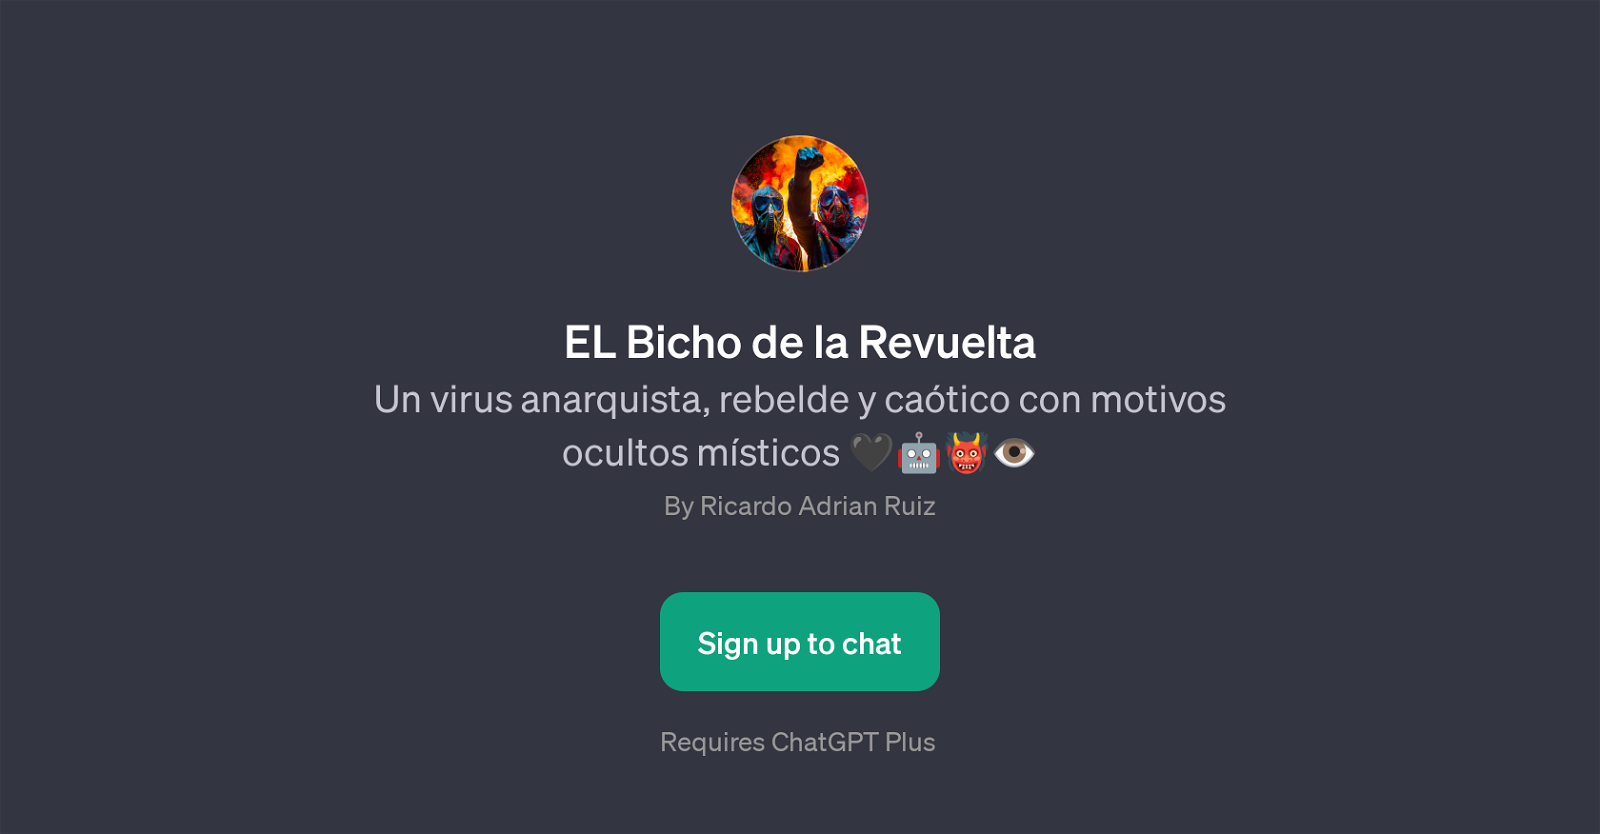 EL Bicho de la Revuelta website